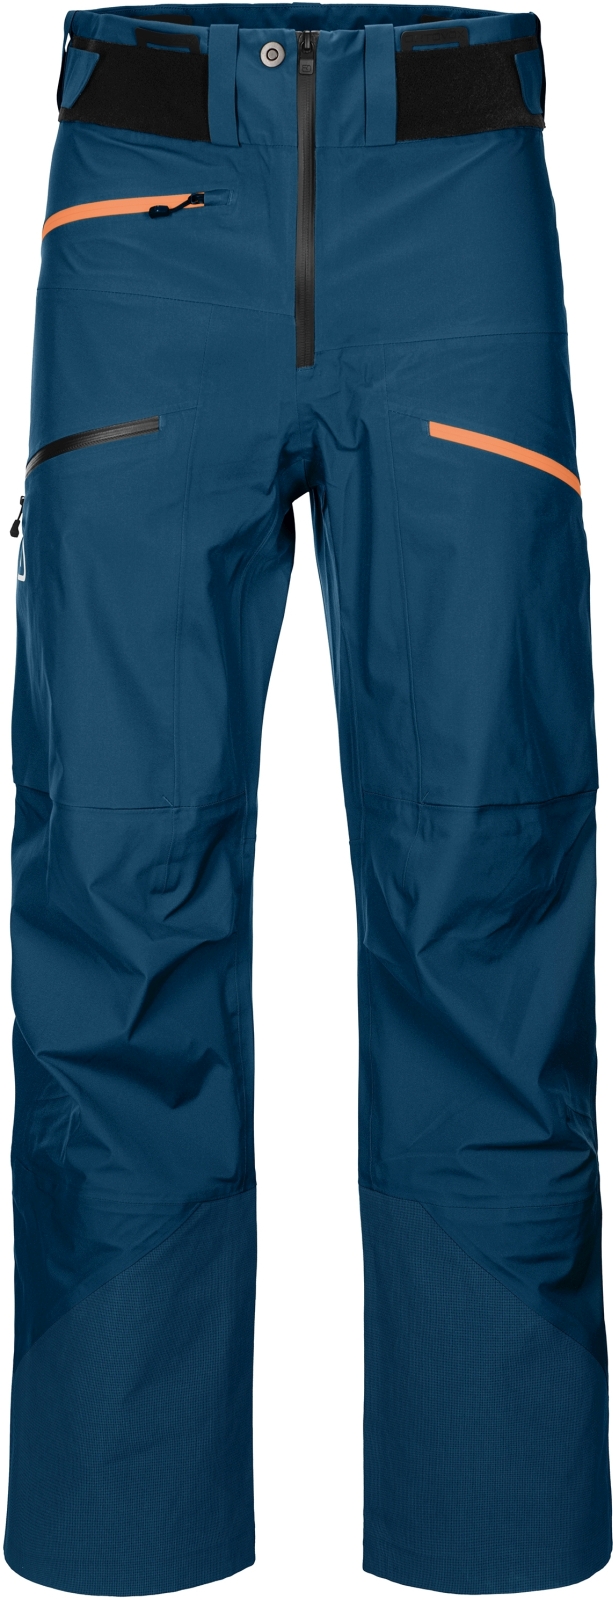 E-shop Ortovox 3l deep shell pants m - petrol blue M